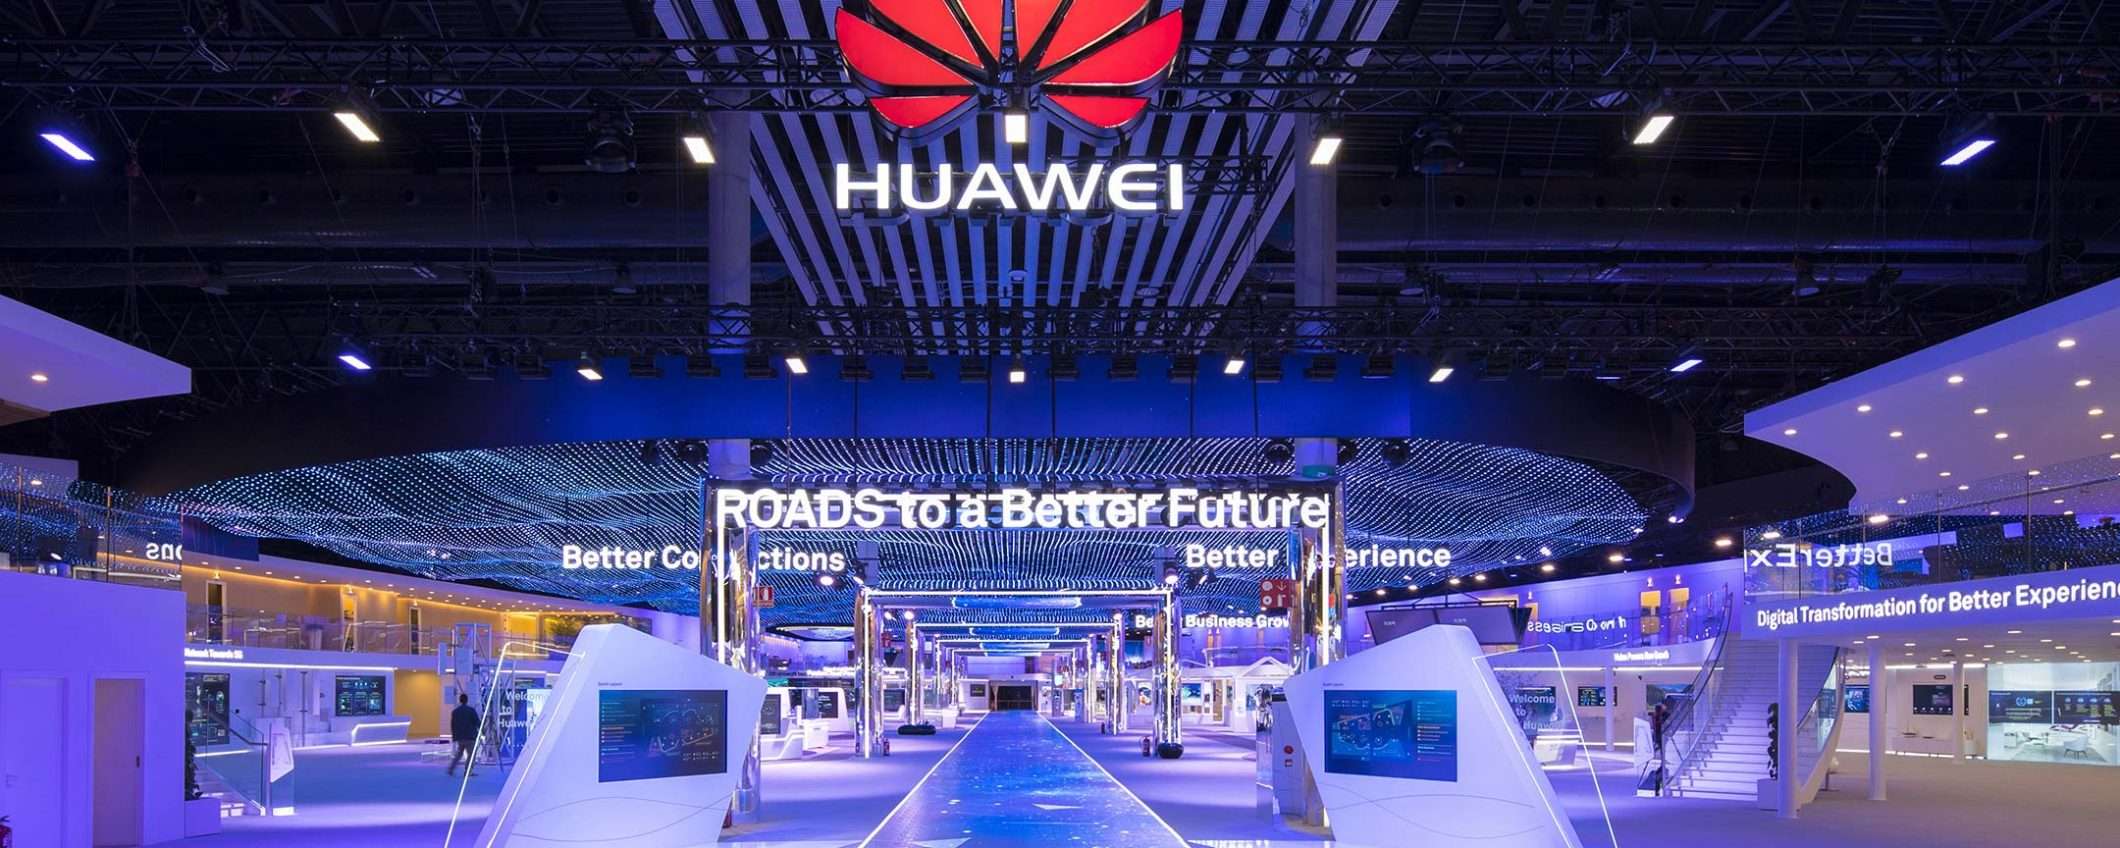 Huawei: stop alla fornitura anche dall'Europa?